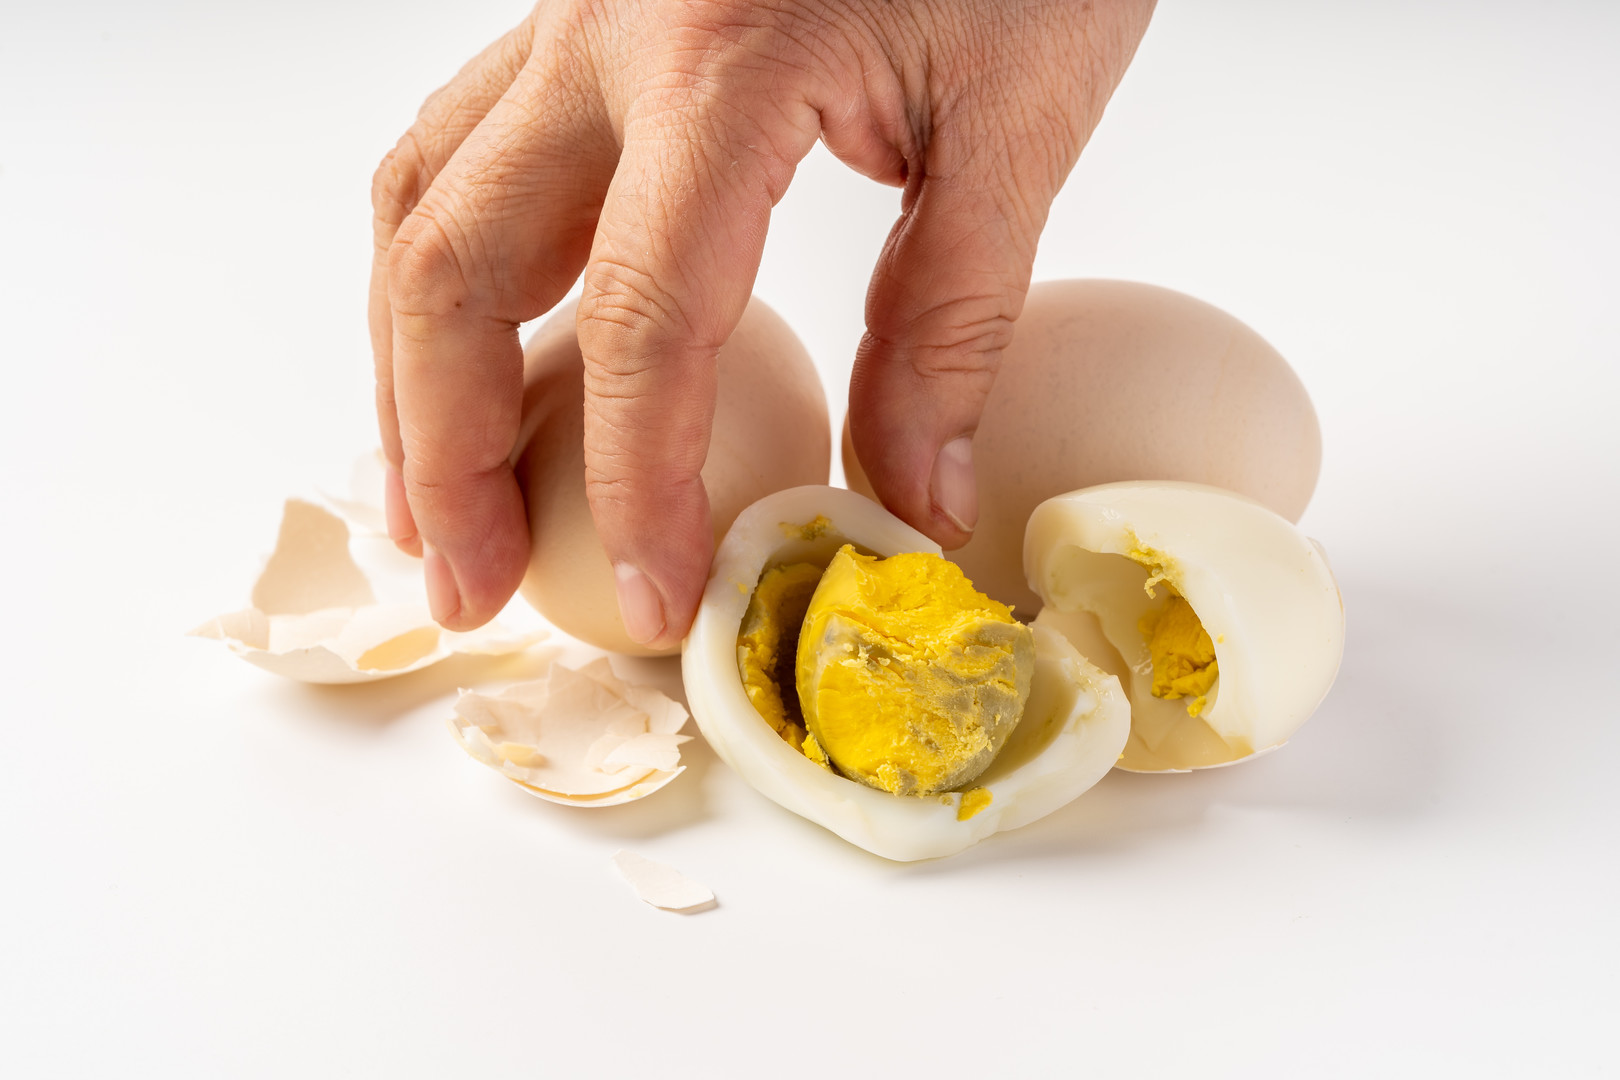 Ilyenkor az történik, hogy a fehérjében levő hidrogén-szulfid reakcióba lép a sárgájában levő vassal, és a tojás két részének határán, a sárgája felszínén vas-szulfid keletkezik. Ez adja a nem túl gusztusos színt. Viszont jó hír, hogy teljesen ártalmatlan, és a tojás ízét sem befolyásolja. →